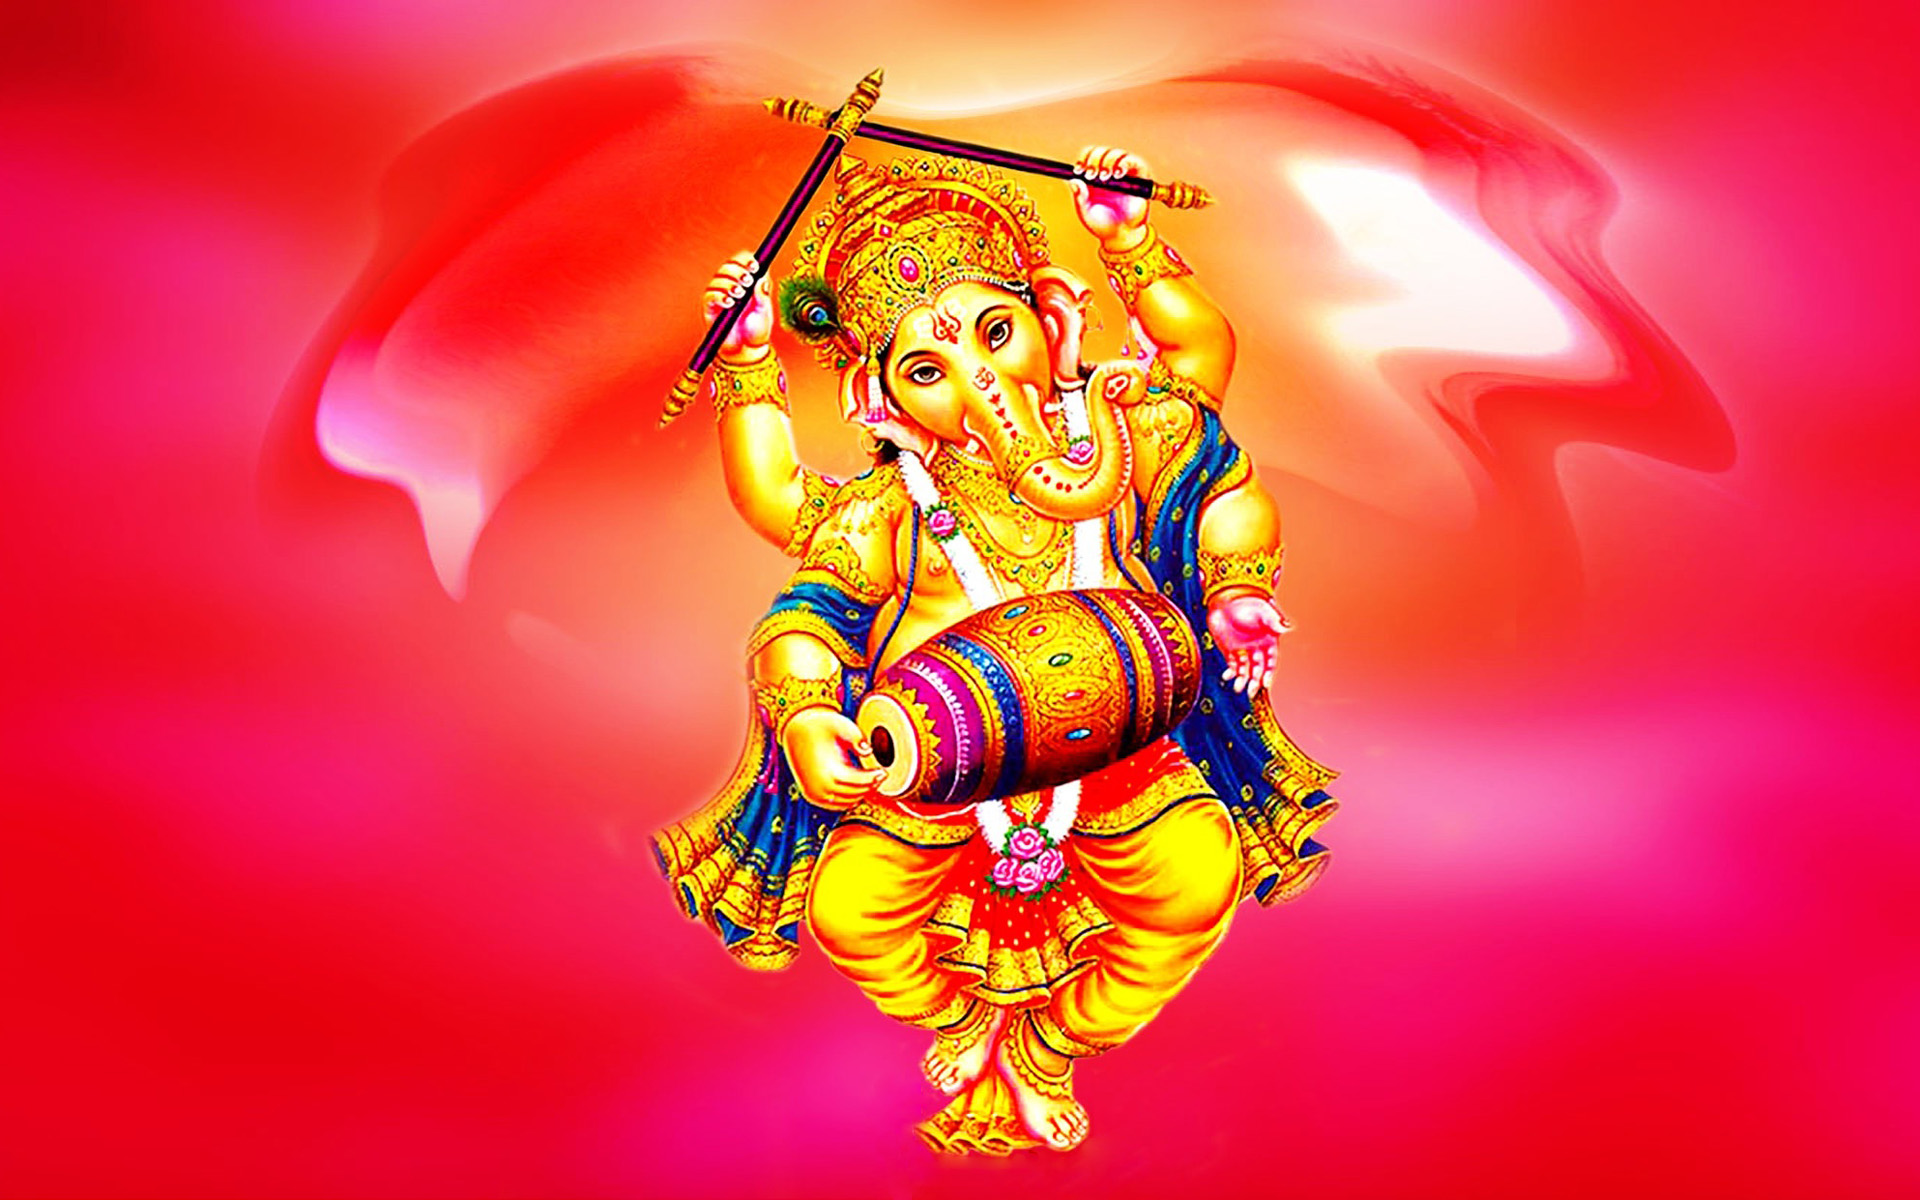 Lord Ganesha Indian Dancing Desktop Hd Wallpaper For Mobile Phones